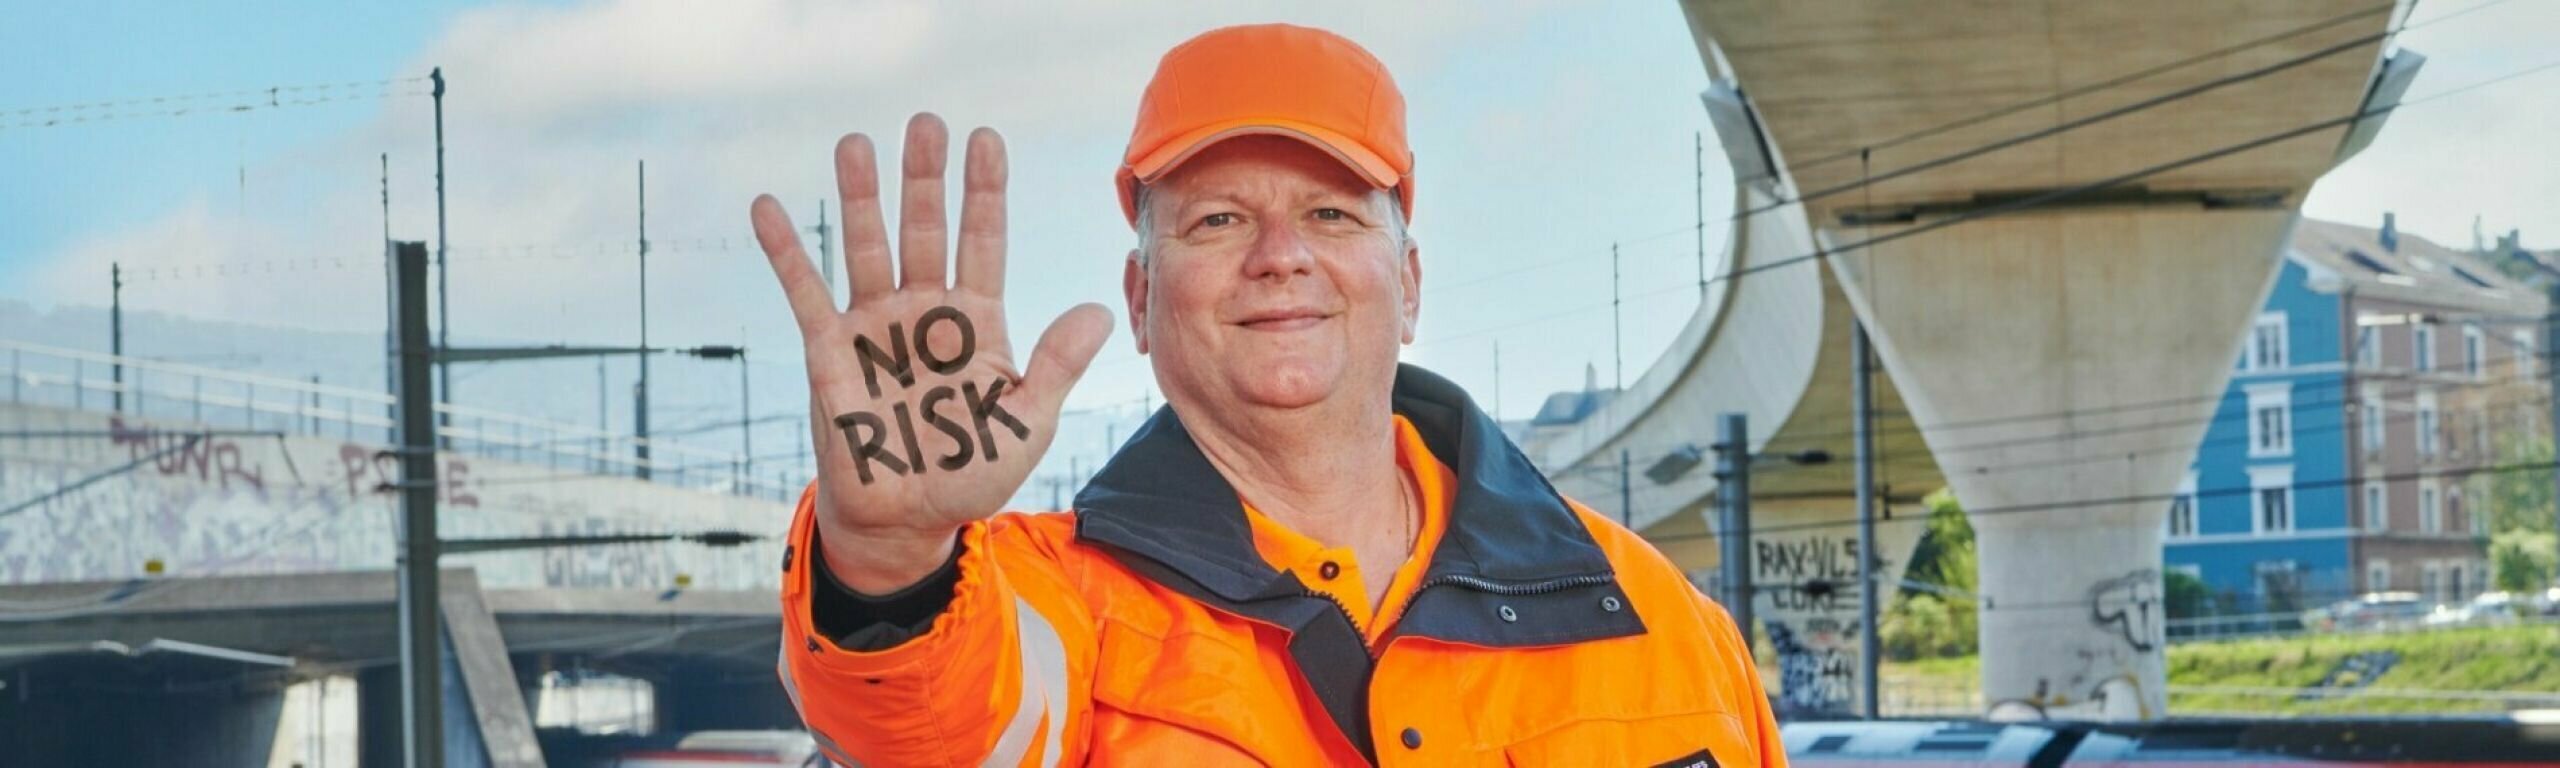 Un homme en tenue de travail tend la main avec l'inscription "No Risk"